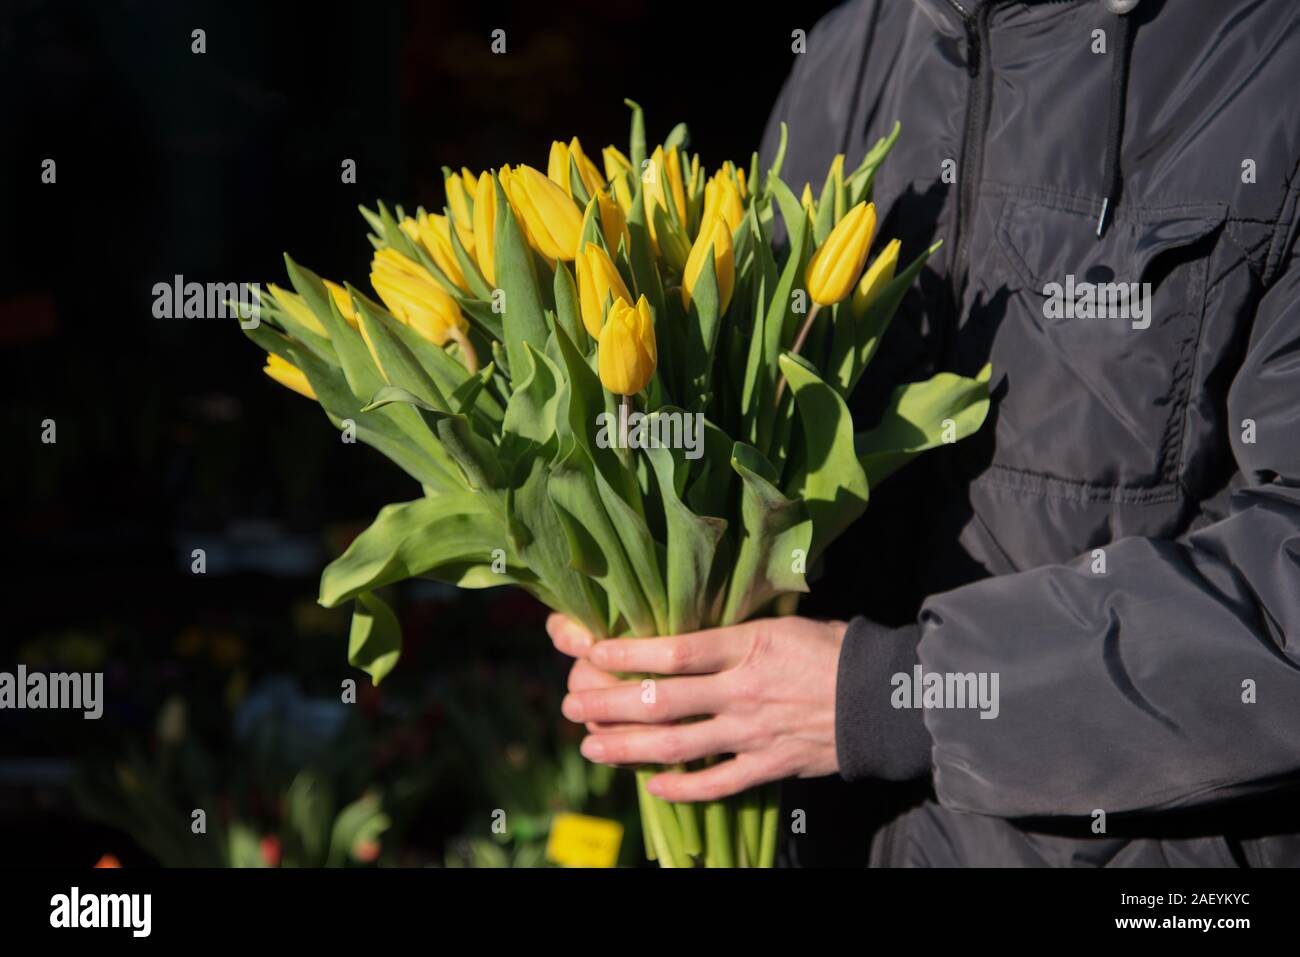 Bouquet of tulips in man hands on bazaar. Stock Photo